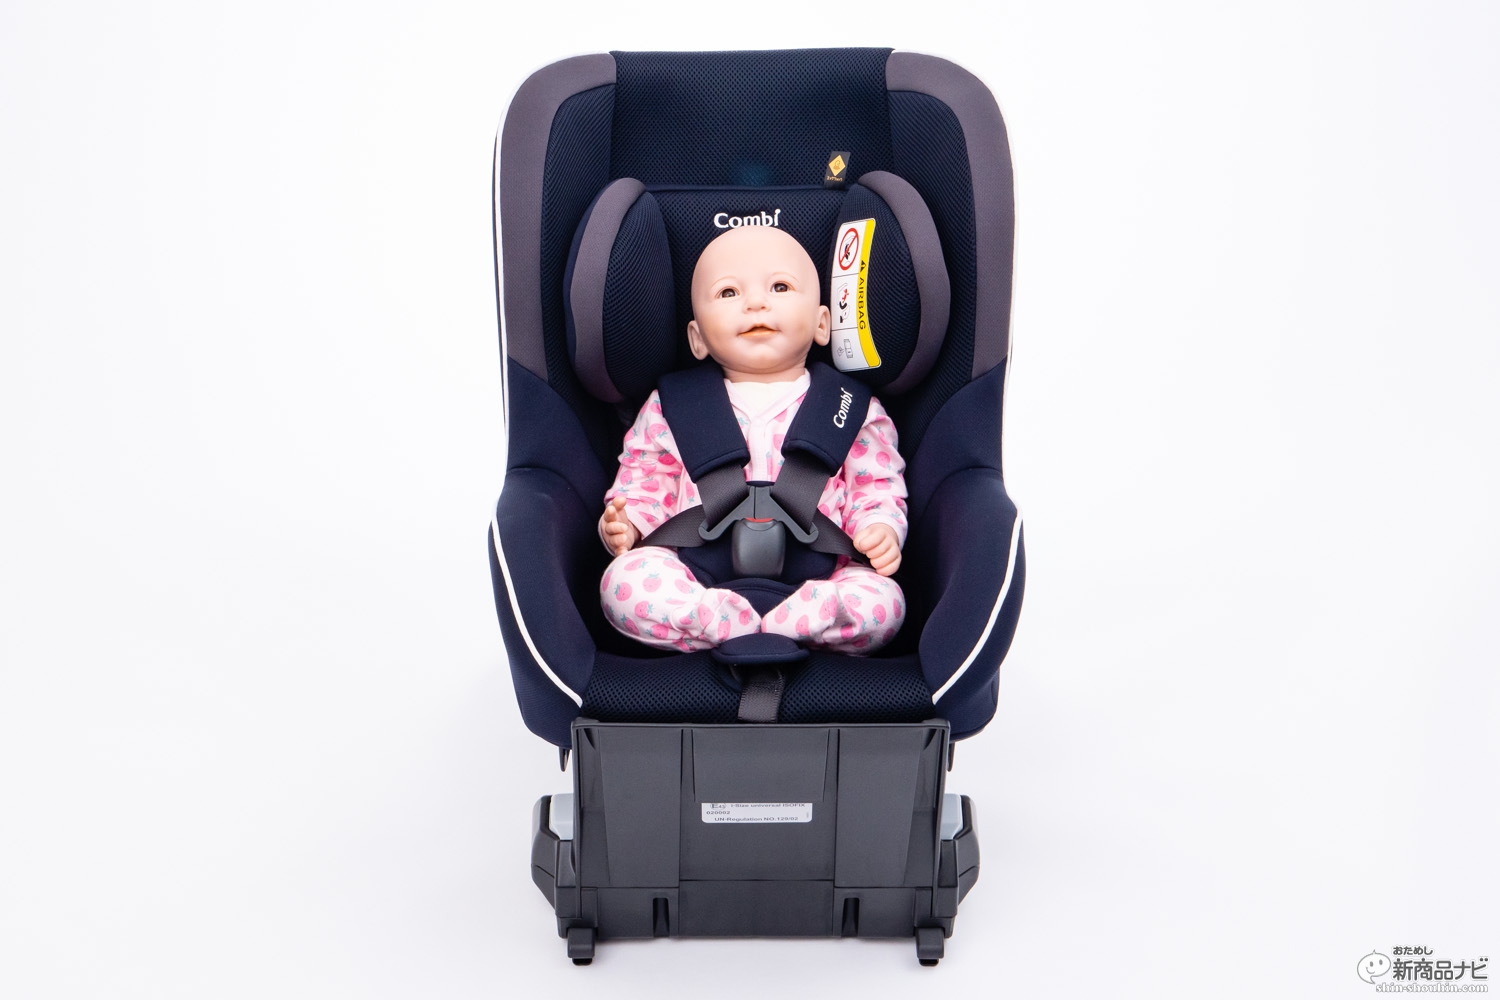 おためし新商品ナビ » Blog Archive » 赤ちゃんを交通事故から守れ